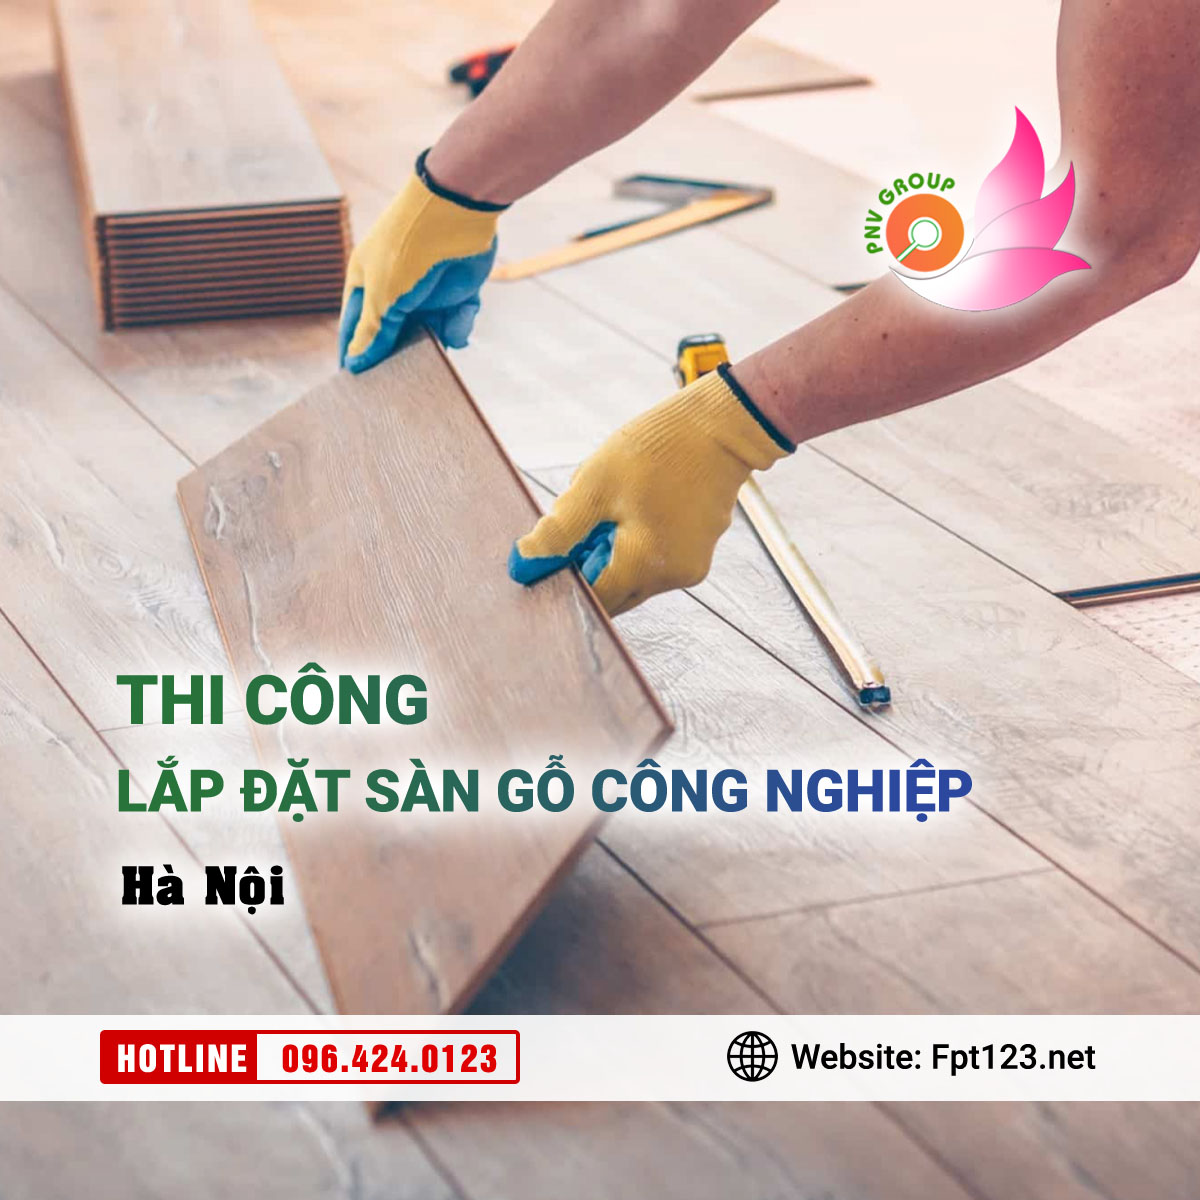 Chuyên lắp dặt thi công sàn gỗ công nghiệp tại Hà Nội